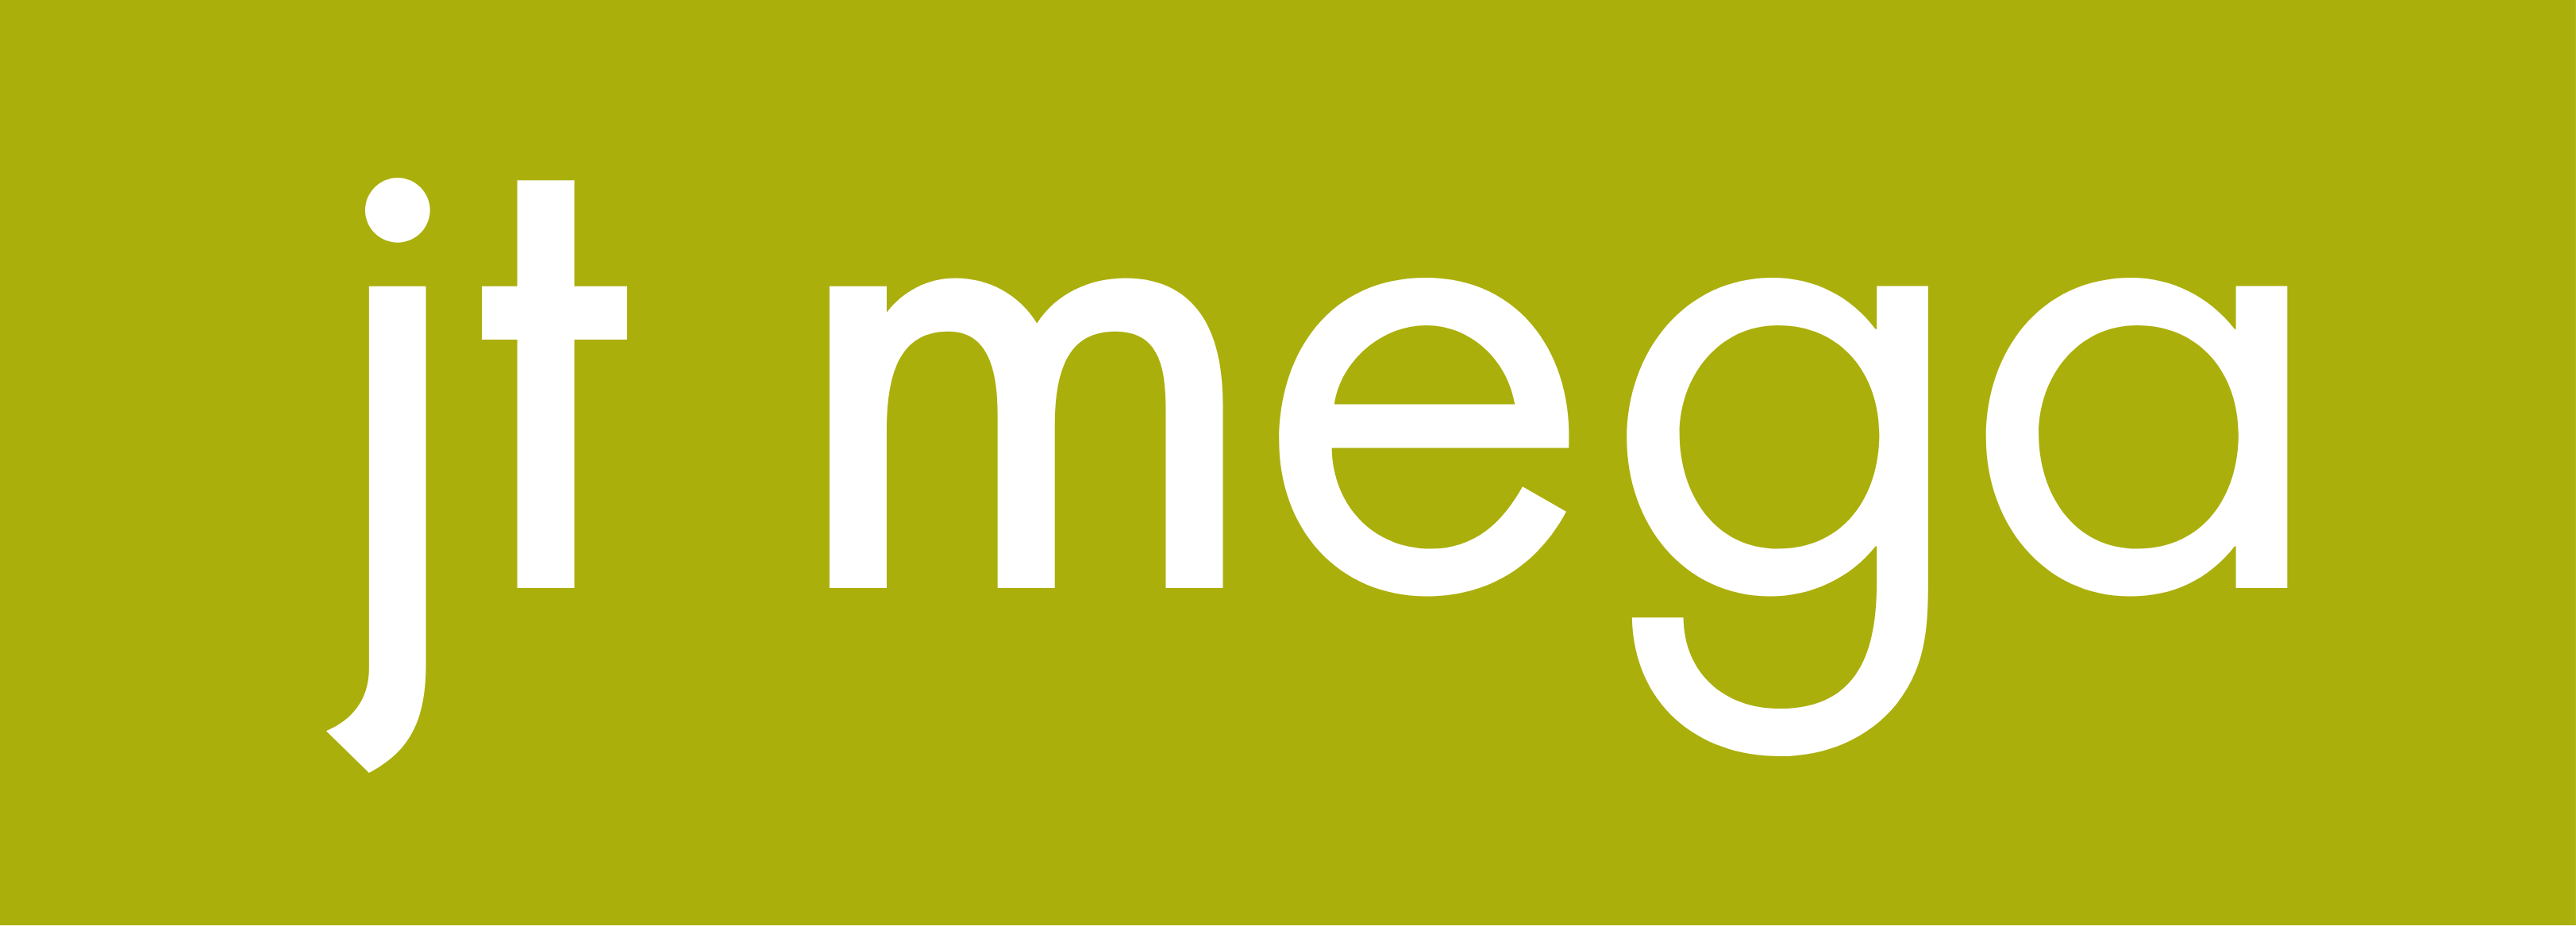 JT Mega logo